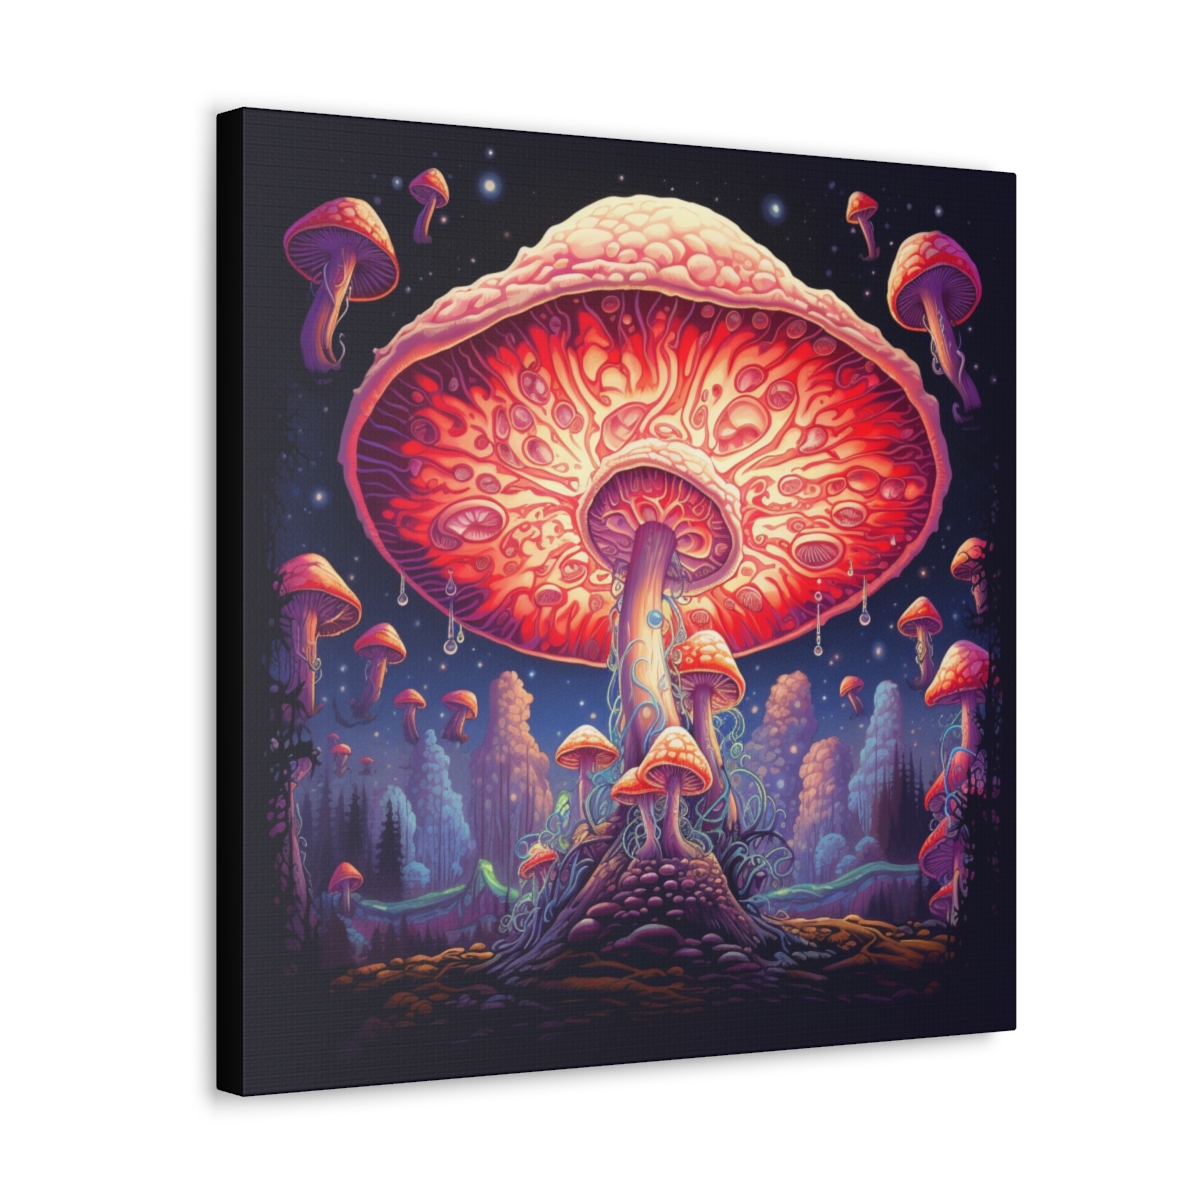 Mushroom Trippy Art: The Unamable